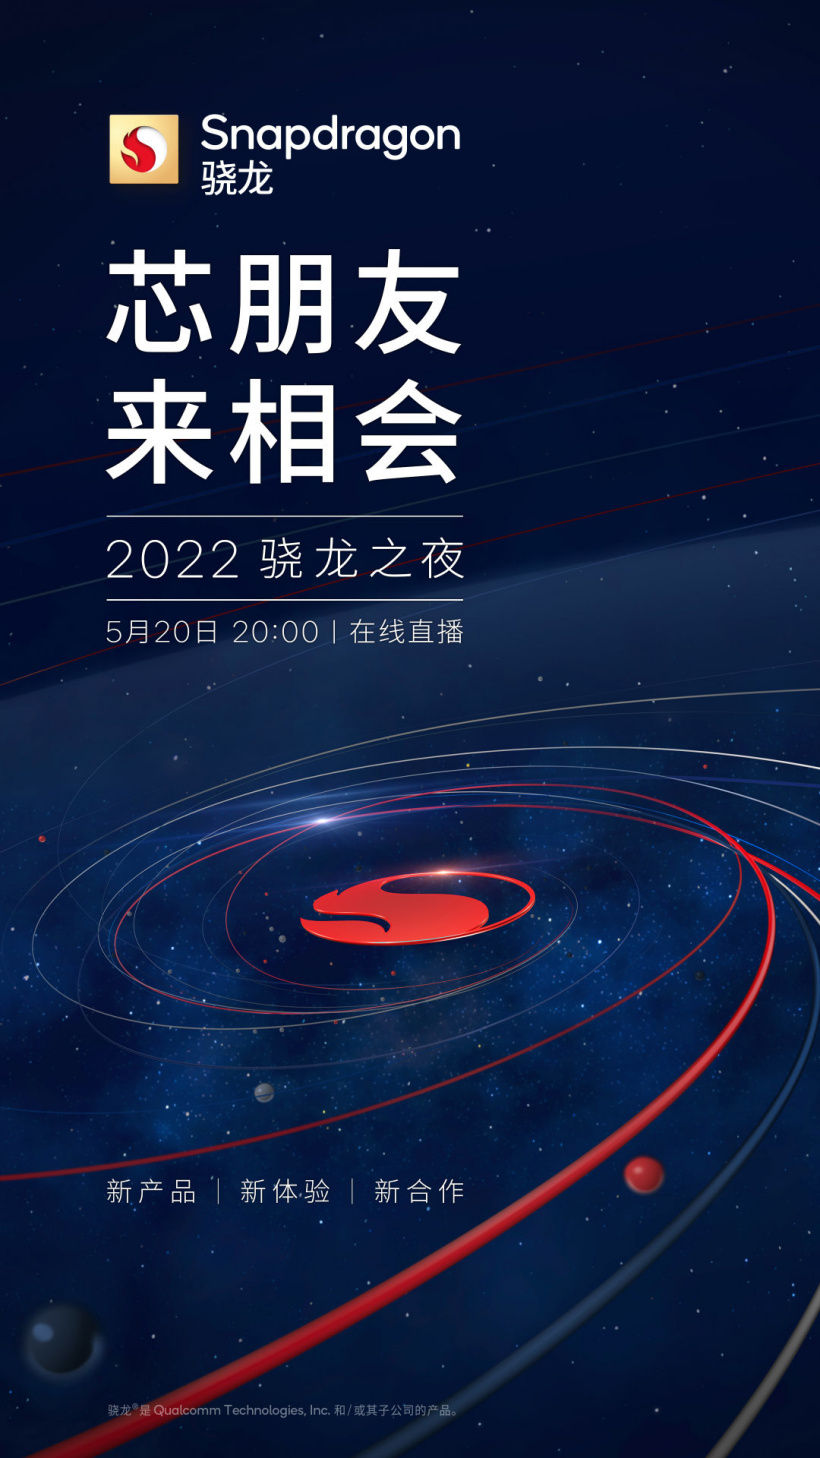 高通官宣本月 20 日举行 2022 骁龙之夜活动 骁龙 7 Gen 1 / 骁龙 8 Gen 1 Plus 有望发布